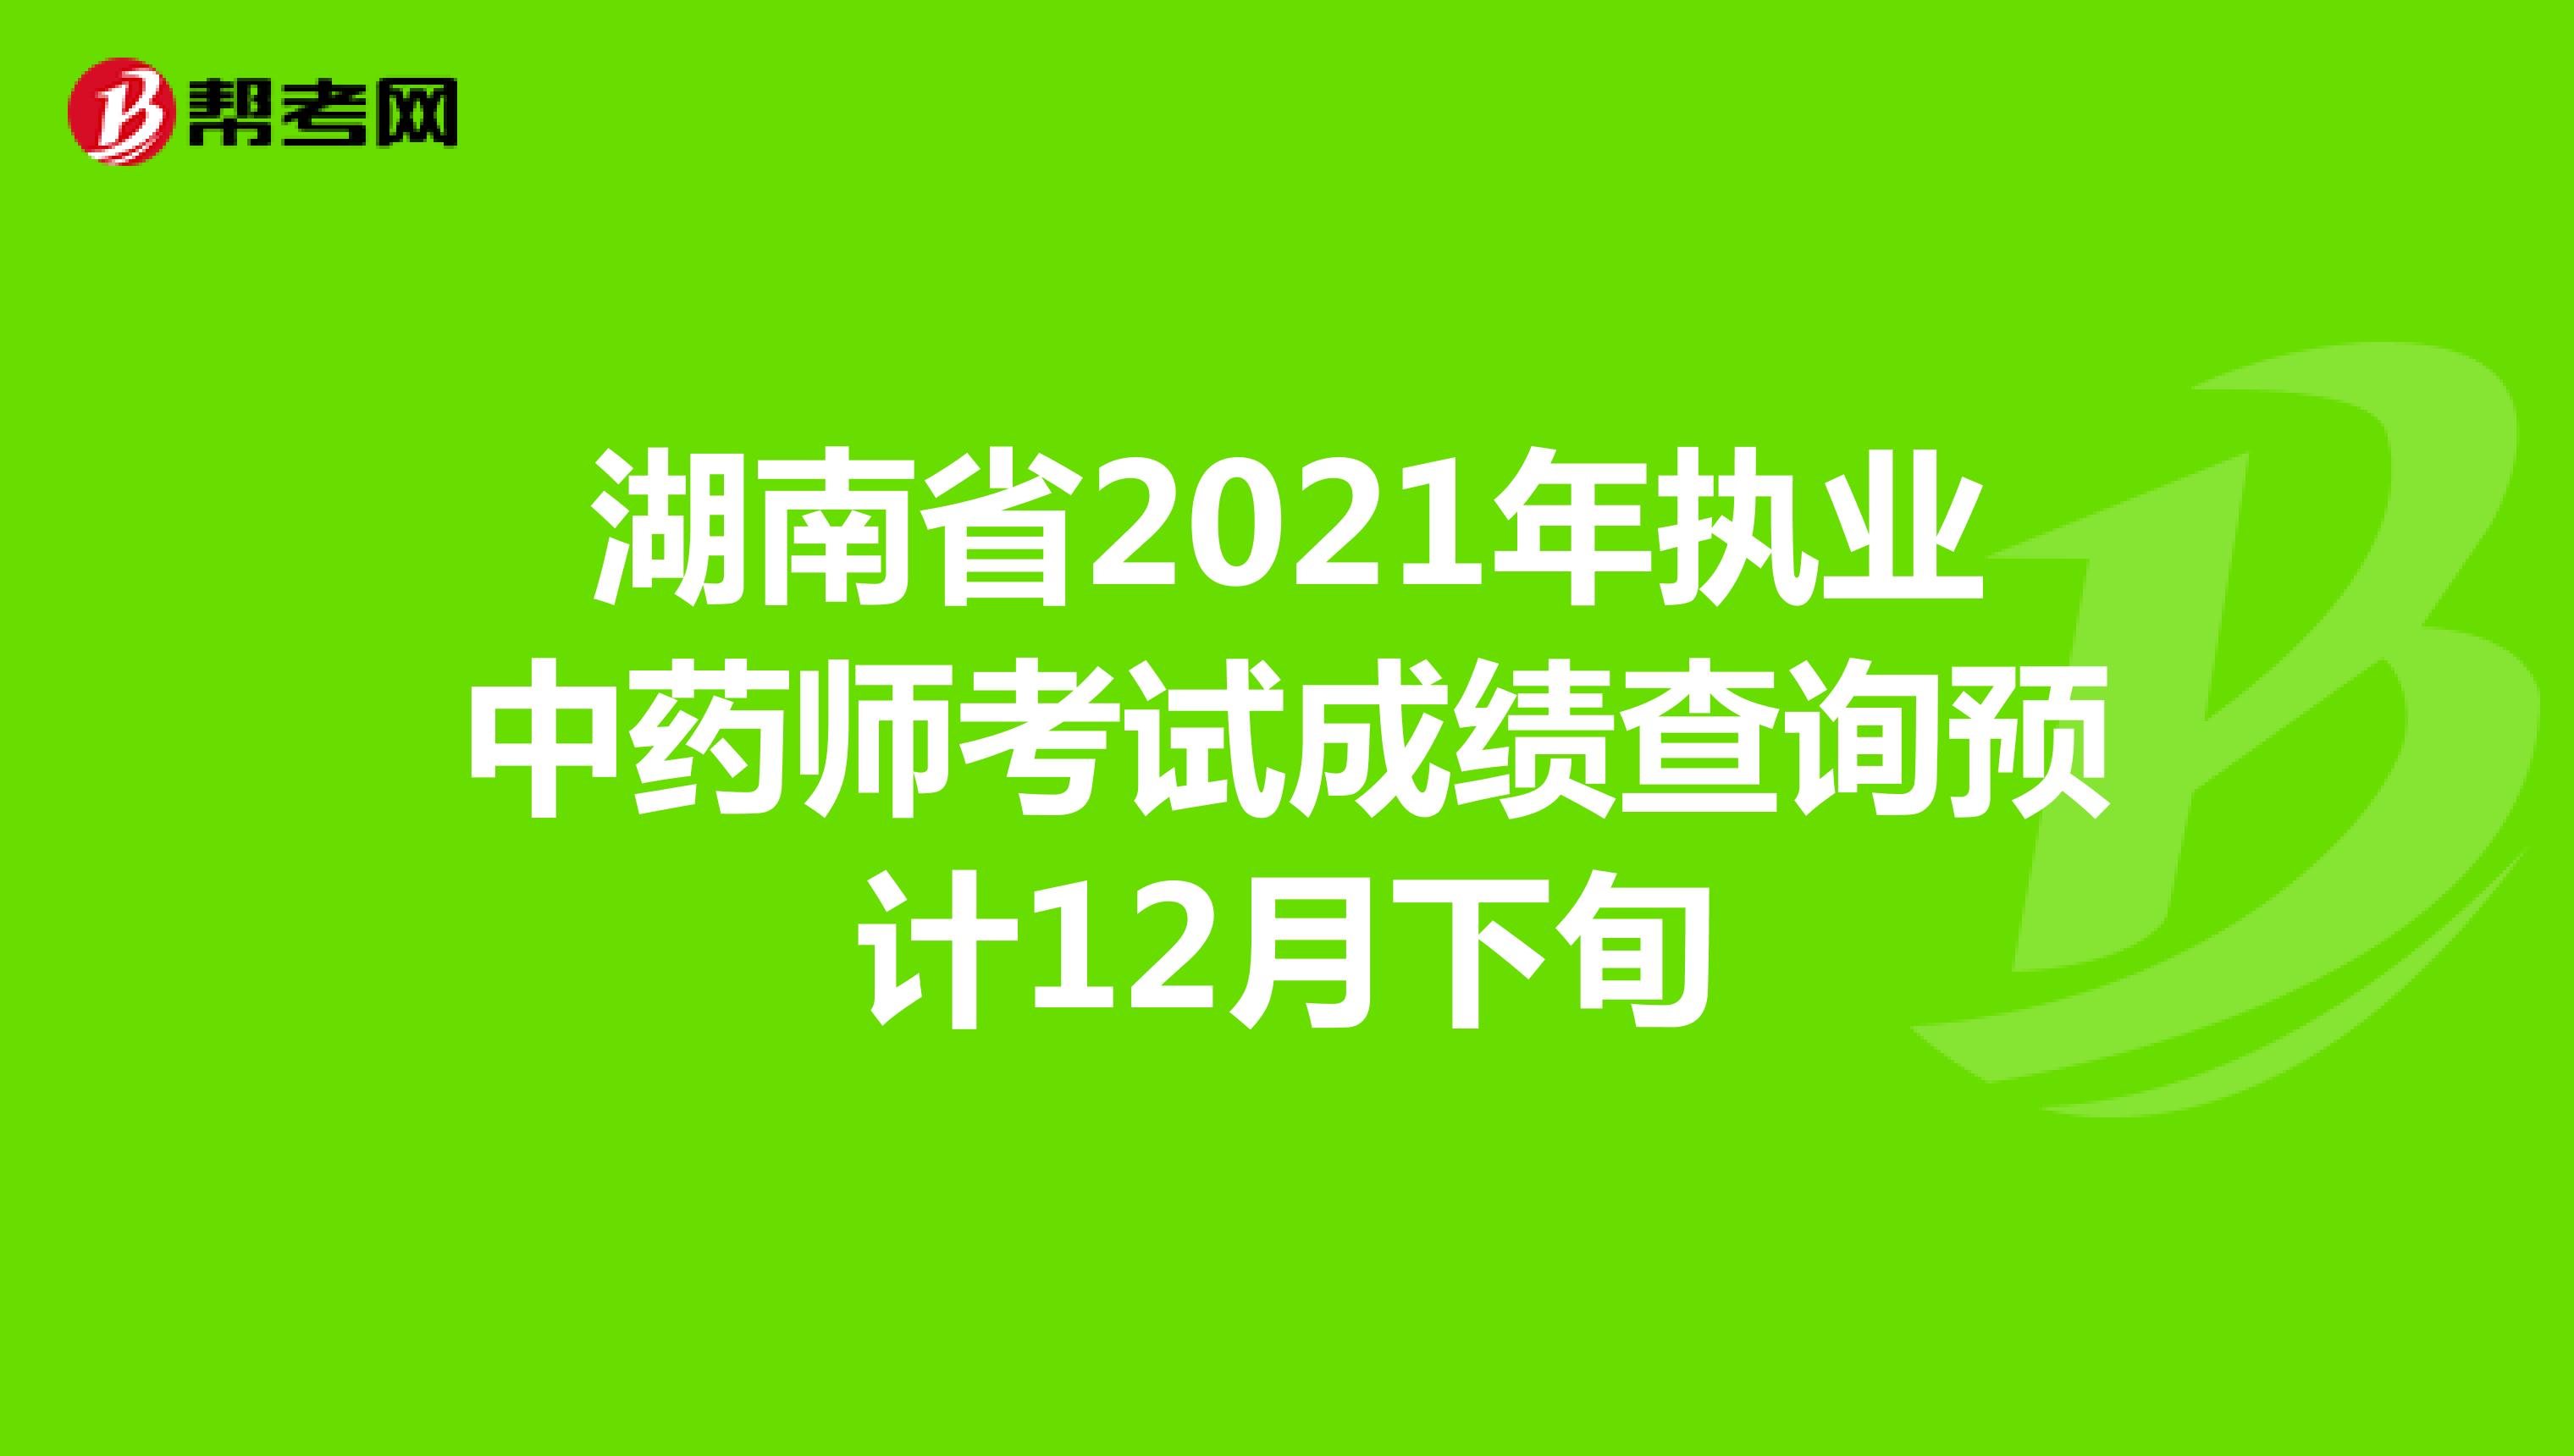 湖南省2021年执业中药师考试成绩查询预计12月下旬